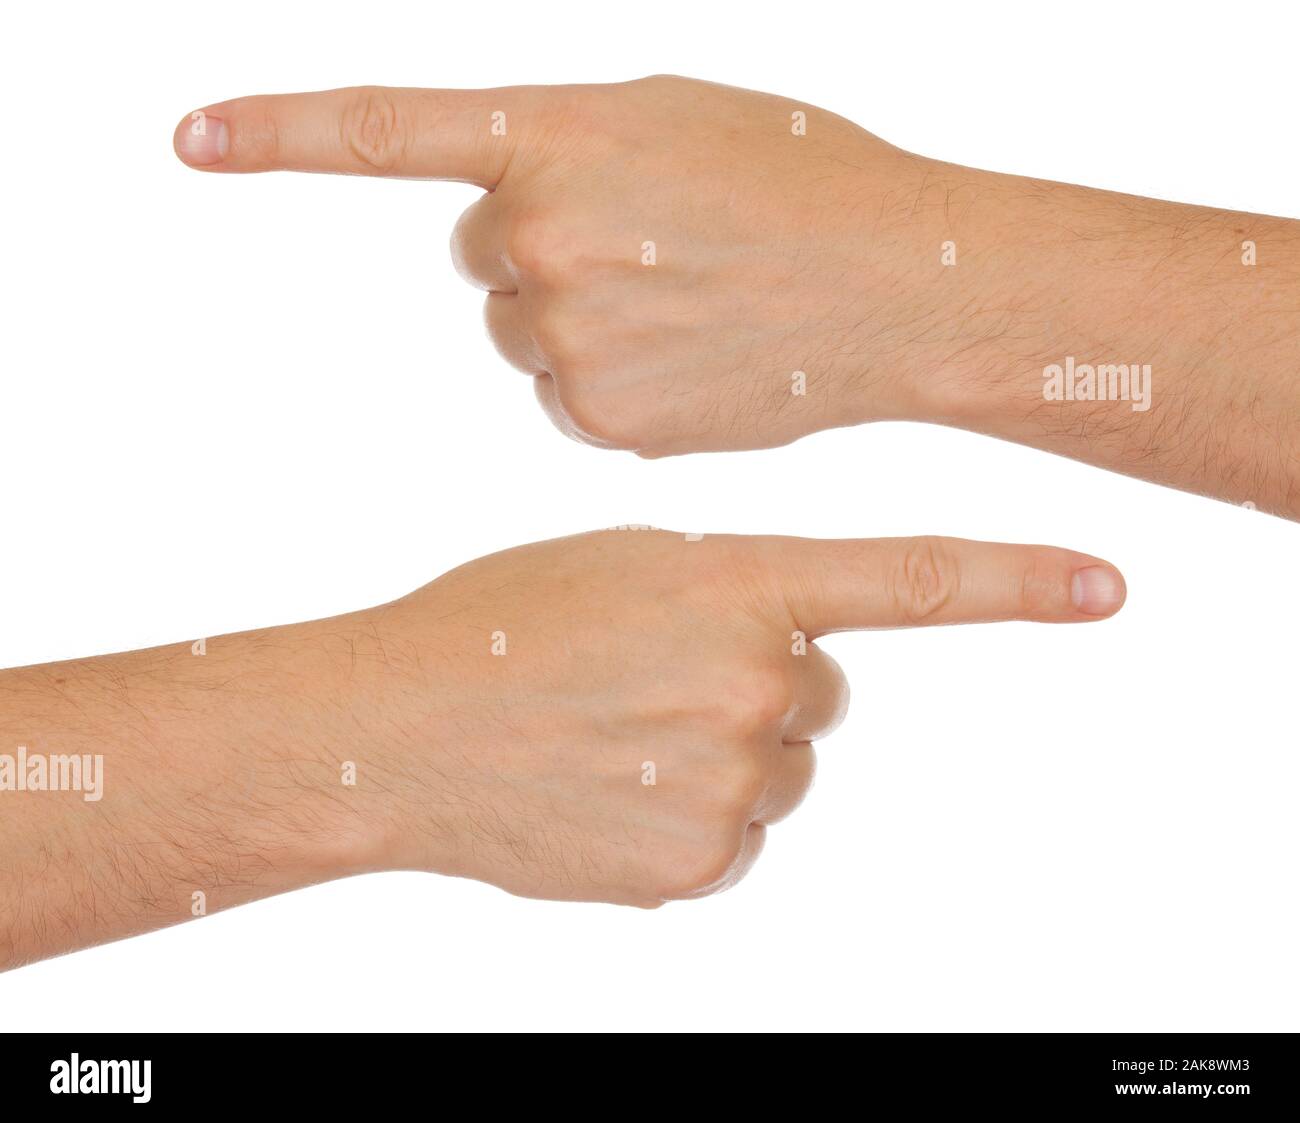 Macho de manos y dedos índice mostrando las direcciones izquierda y derecha, aislado en blanco Foto de stock